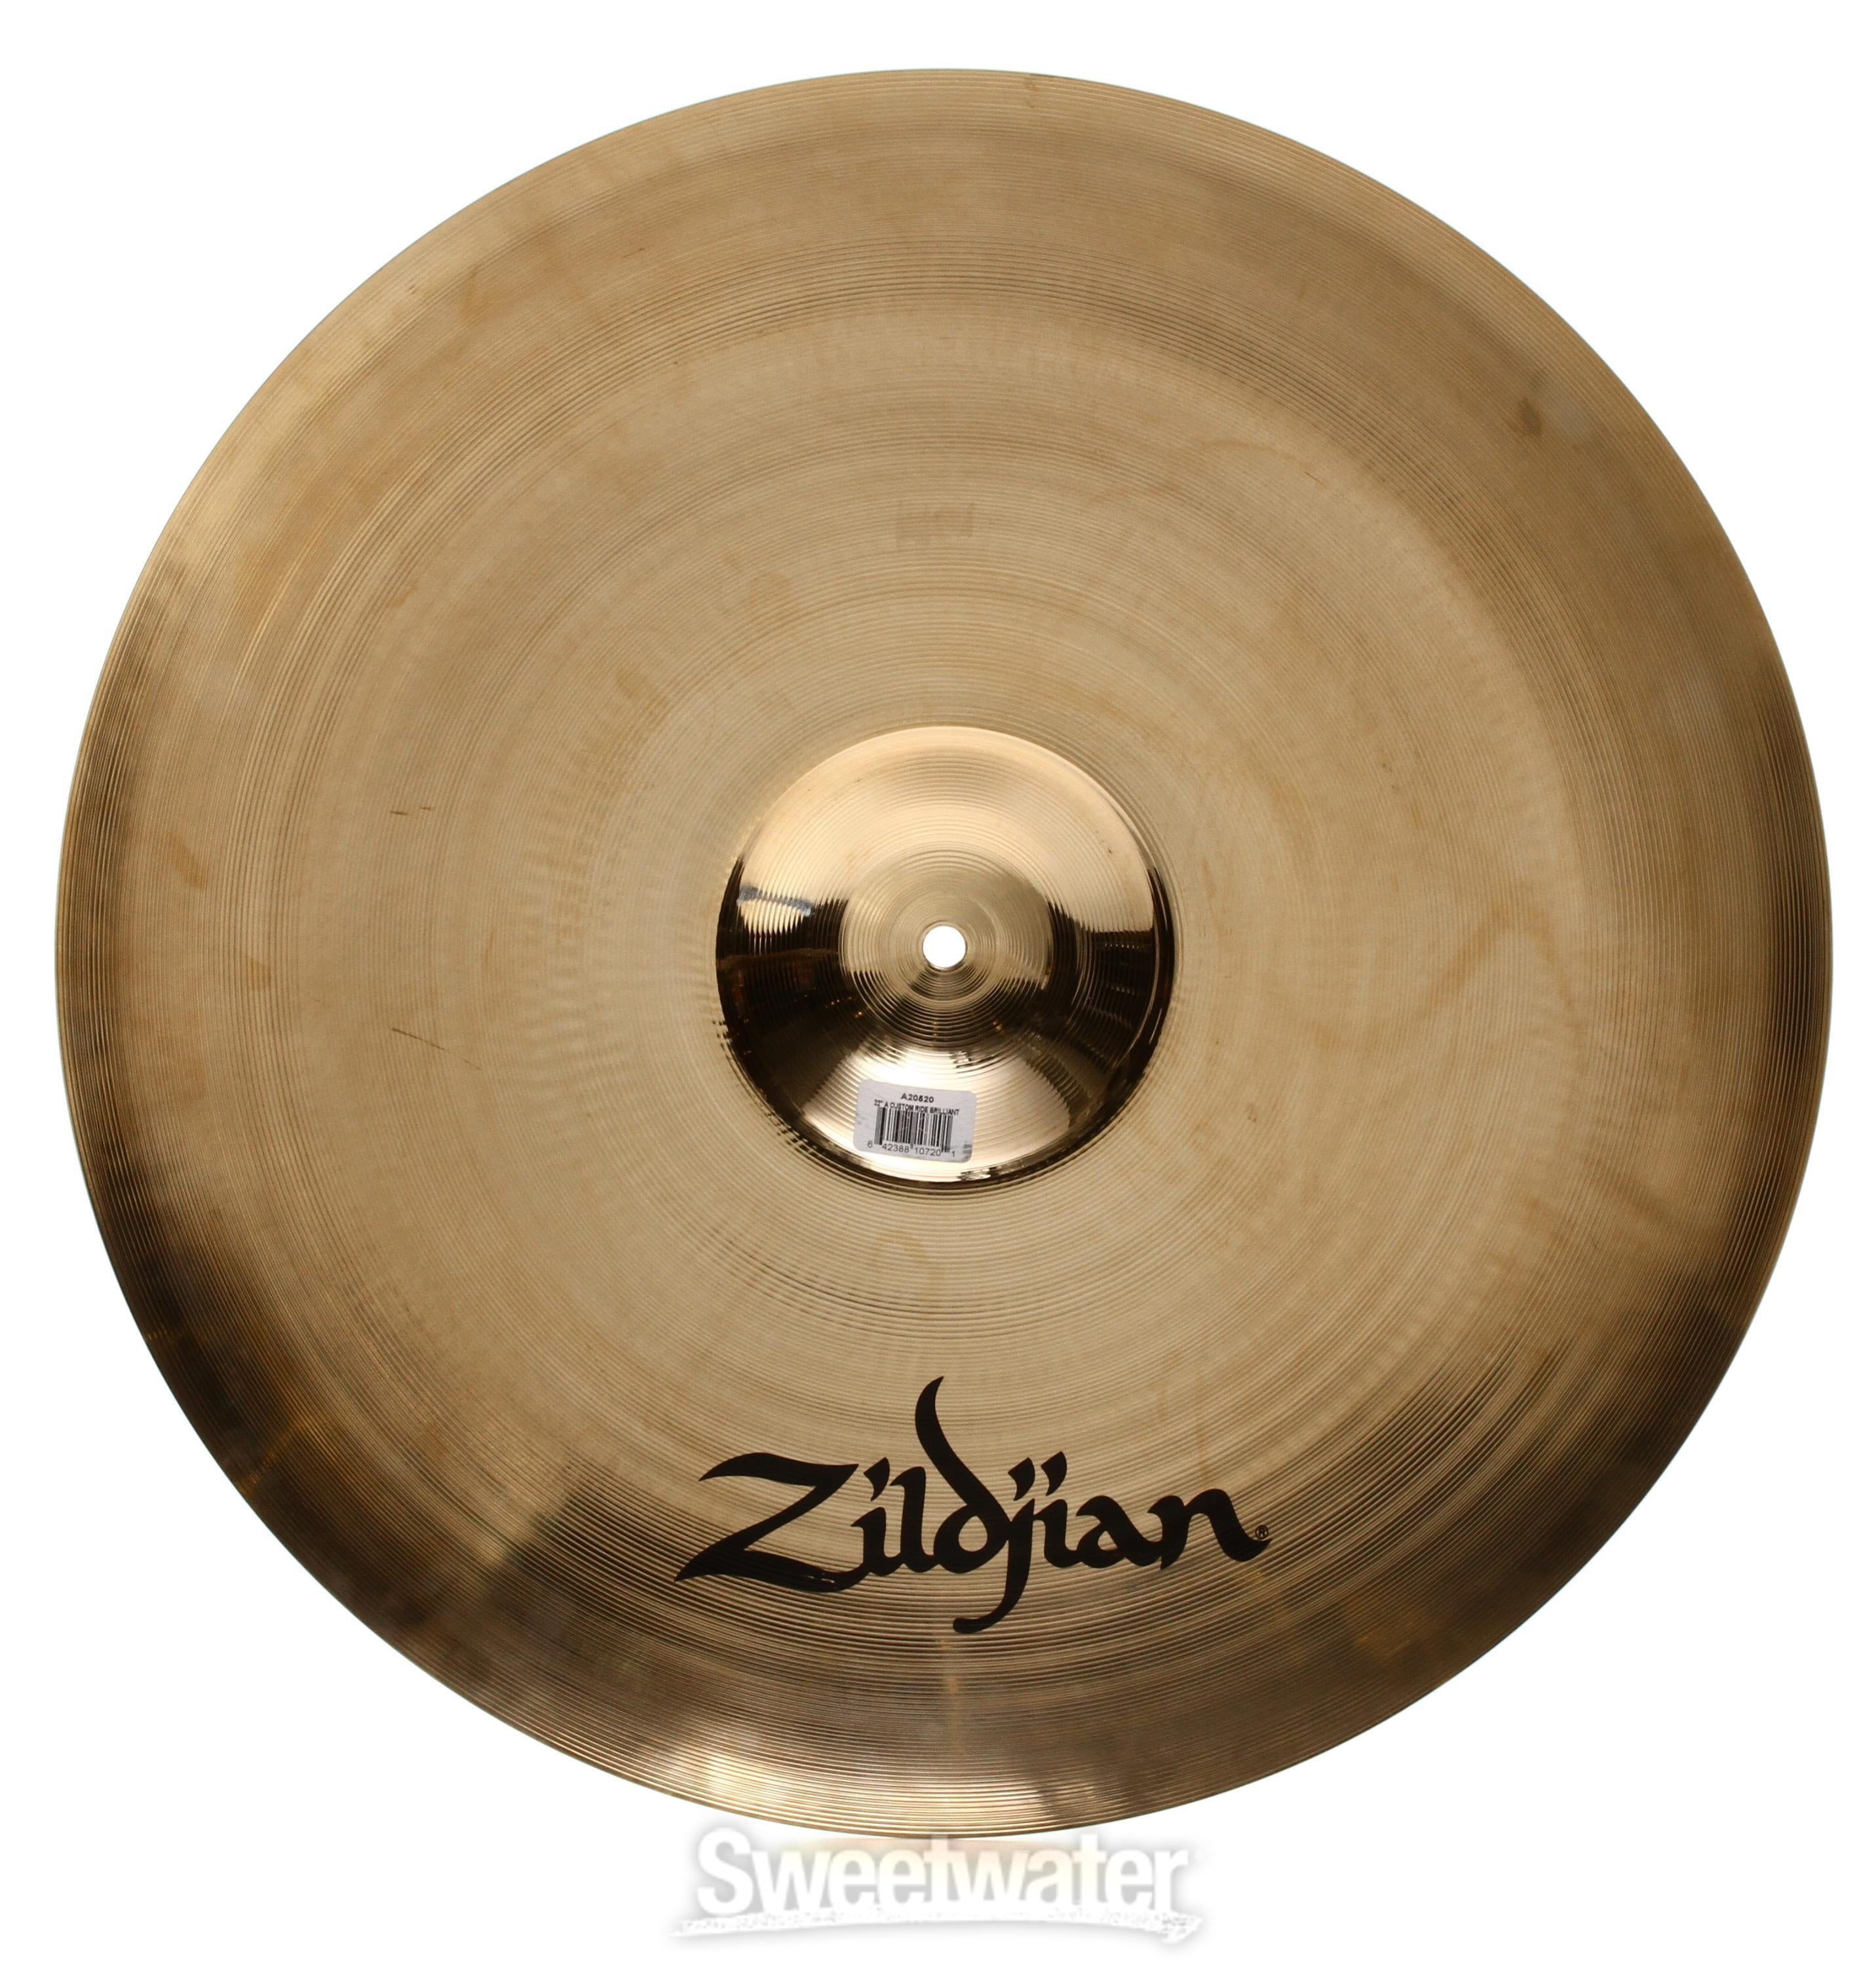 Zildjian 22-inch A Custom Ride Cymbal